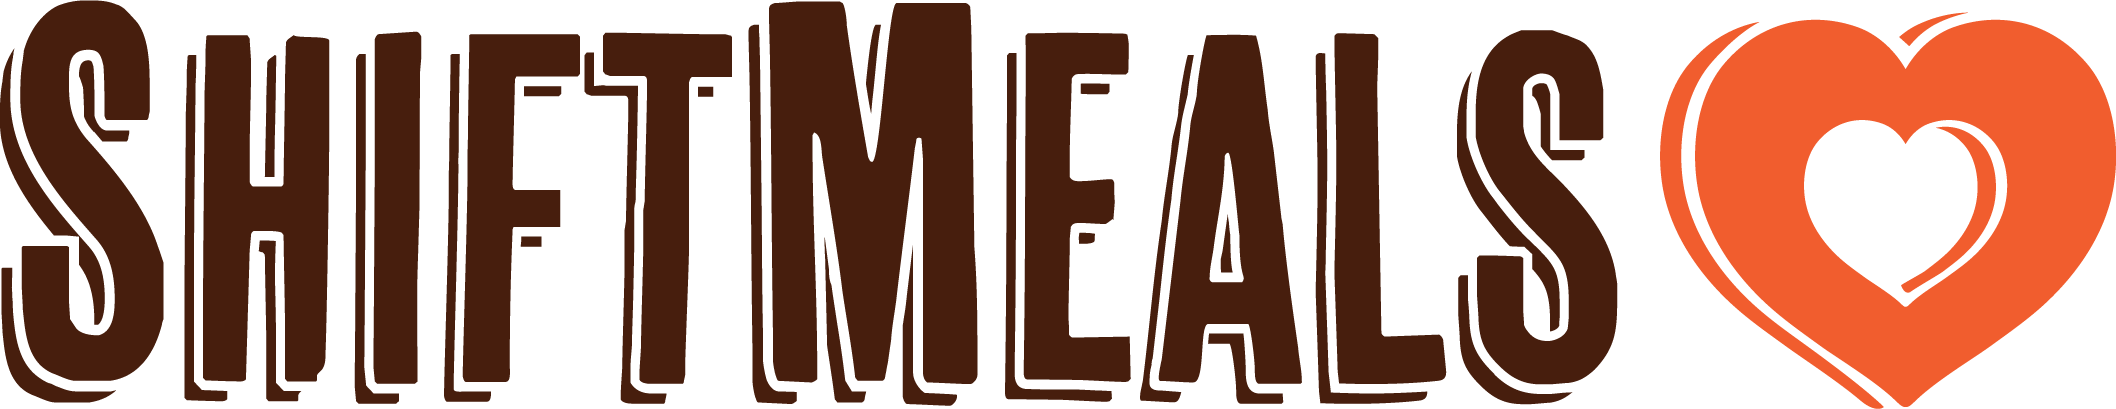 ShiftMeals logo